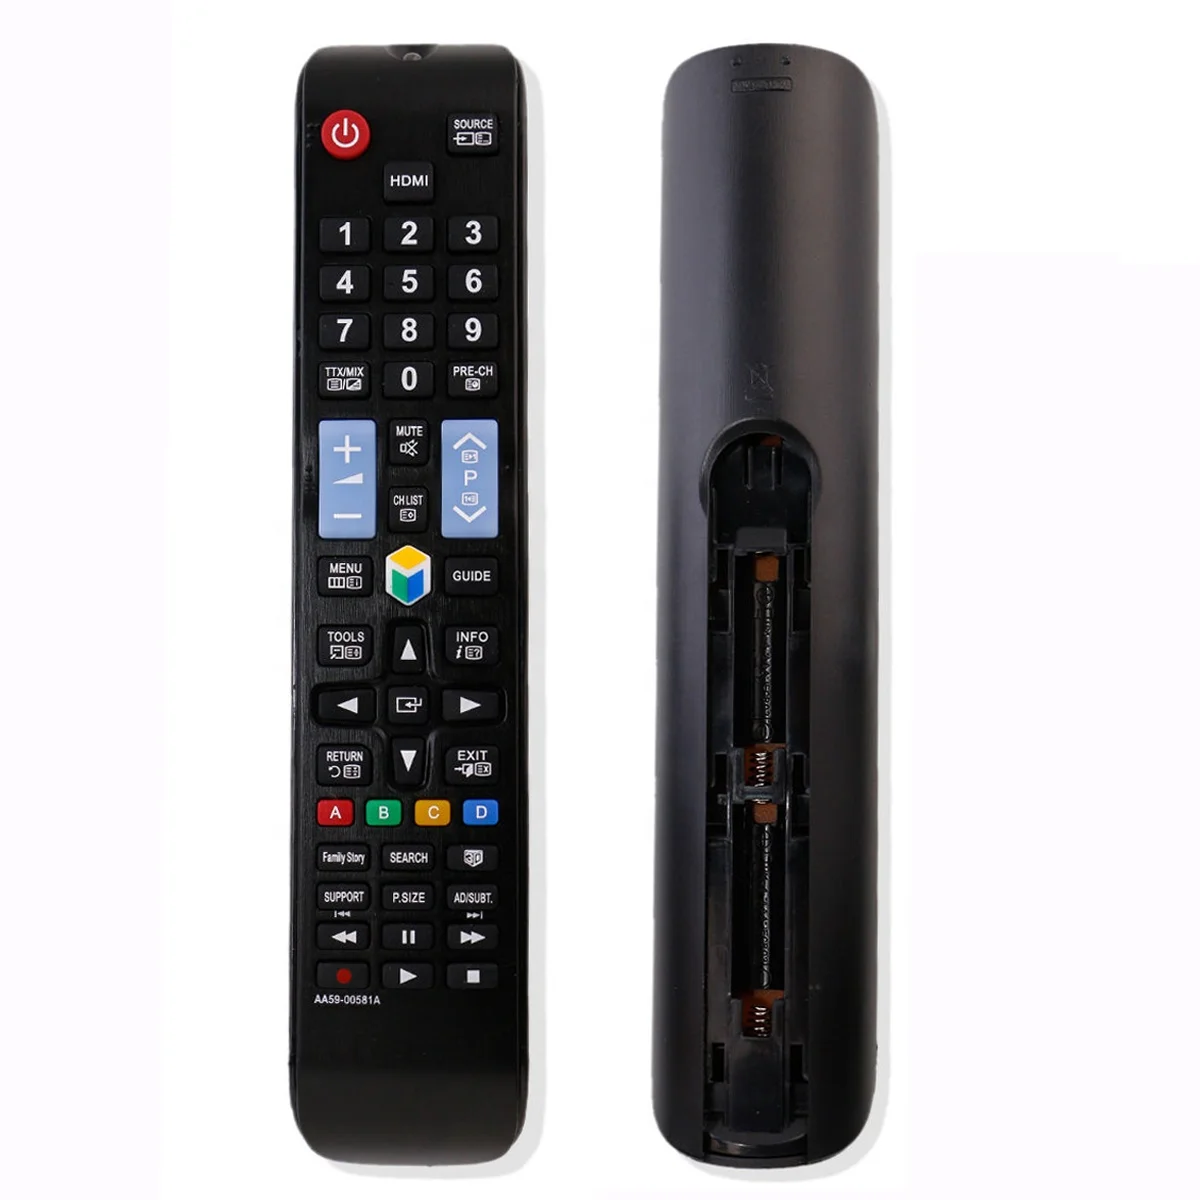 Mando A Distancia De Reemplazo Para Smart Tv,Aa59-00581a Para Tv Samsung,3d - Buy Reemplazo De Control Remoto,Aa59-00581a,Aa59-00581a Para Smart Tv Product on Alibaba.com